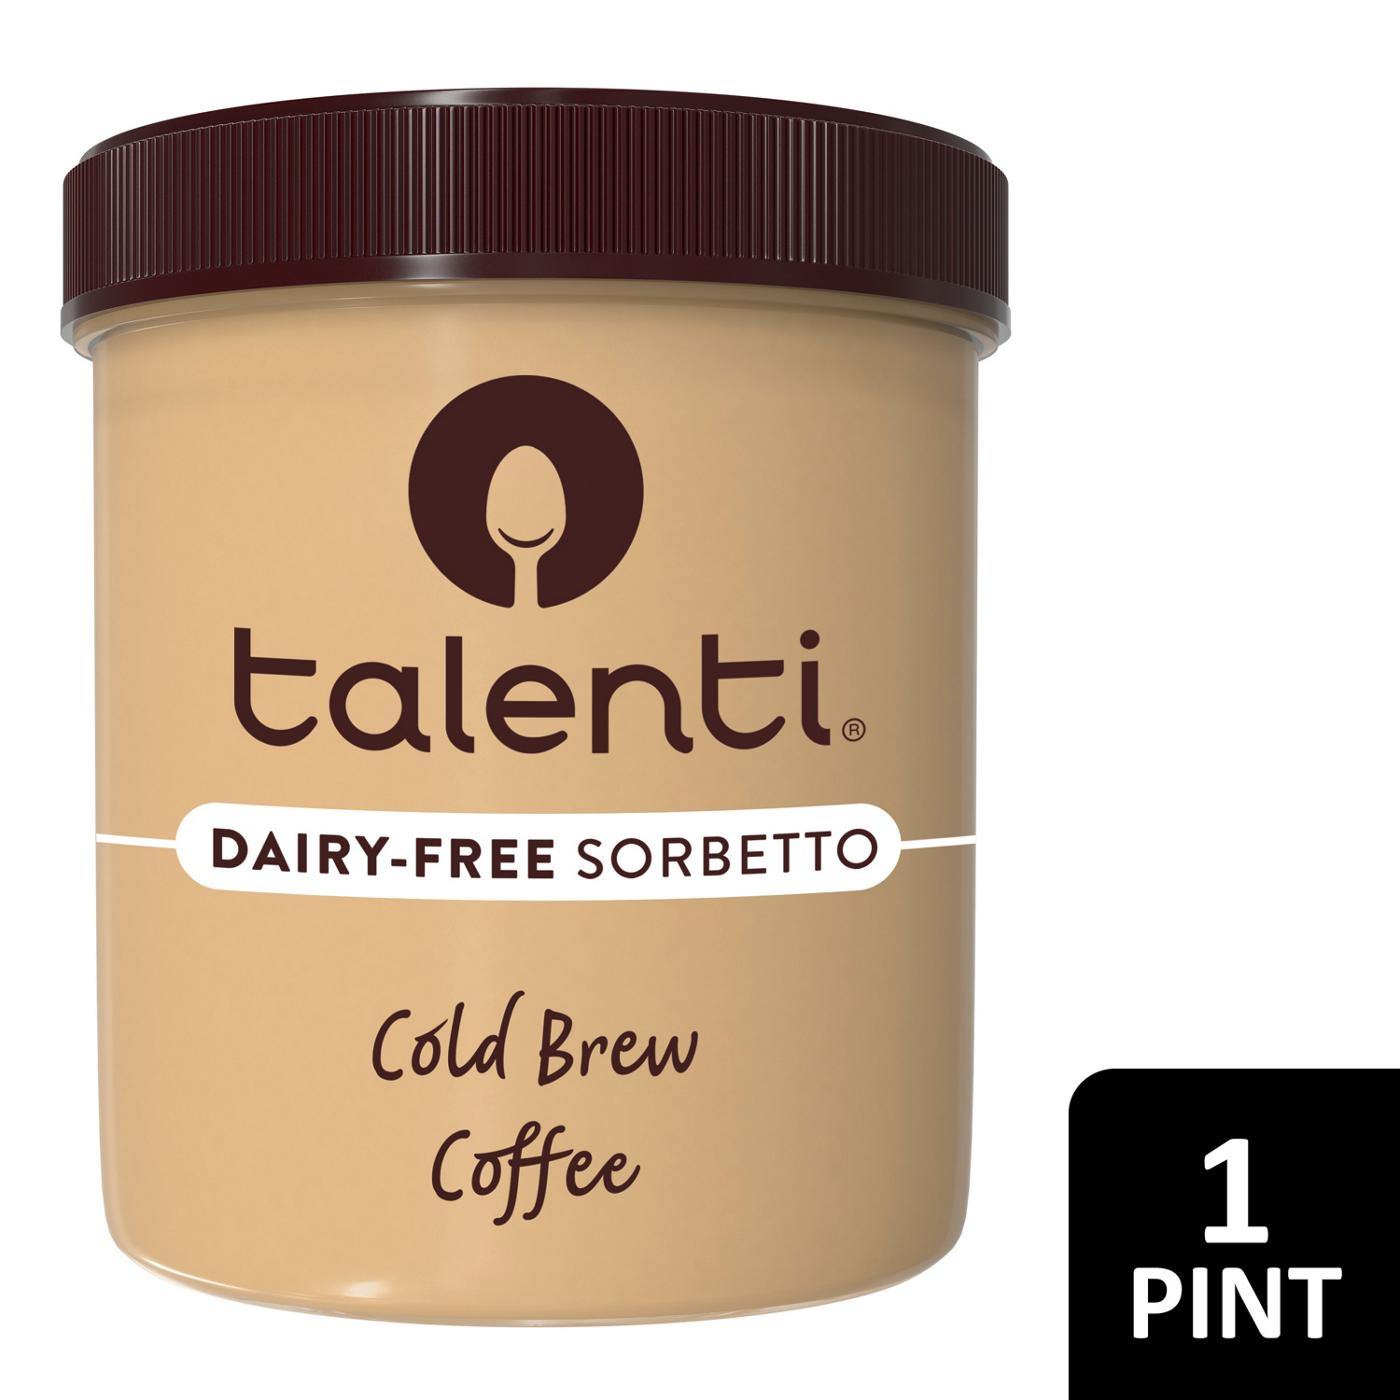 Talenti Dairy-Free Sorbetto Cold Brew Coffee; image 2 of 2